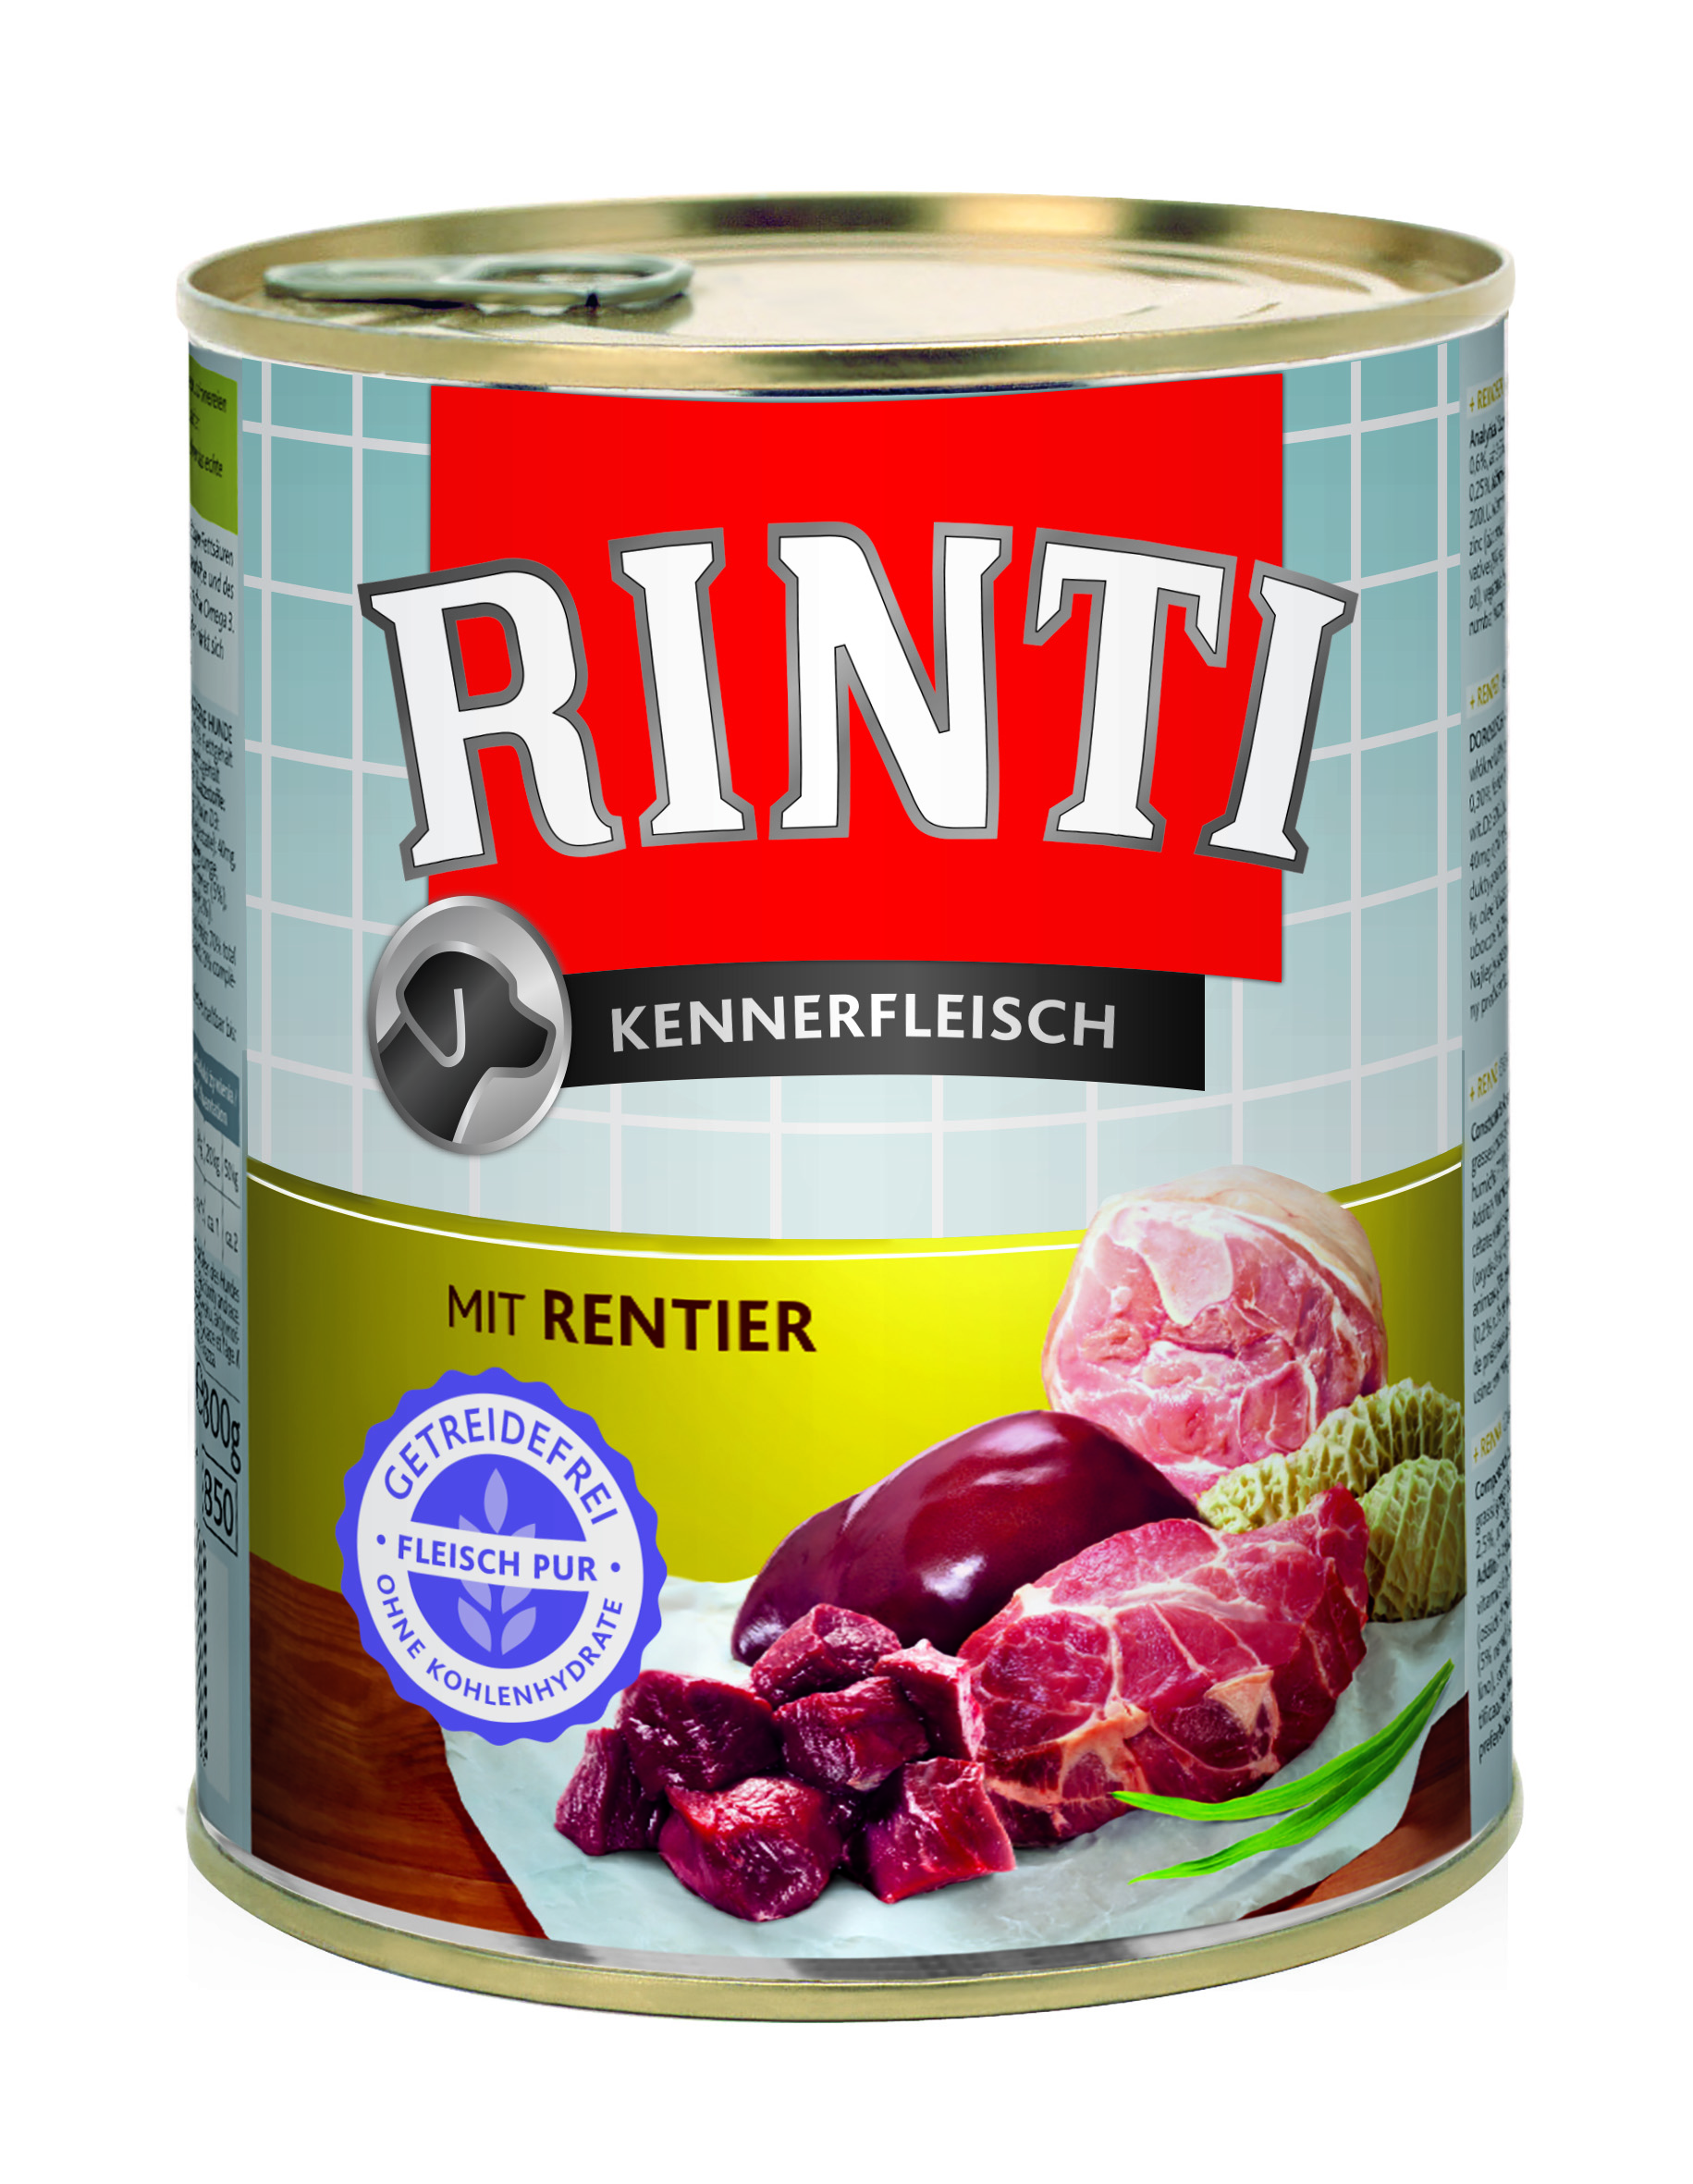 Rinti Kennerfleisch - mit Rentier